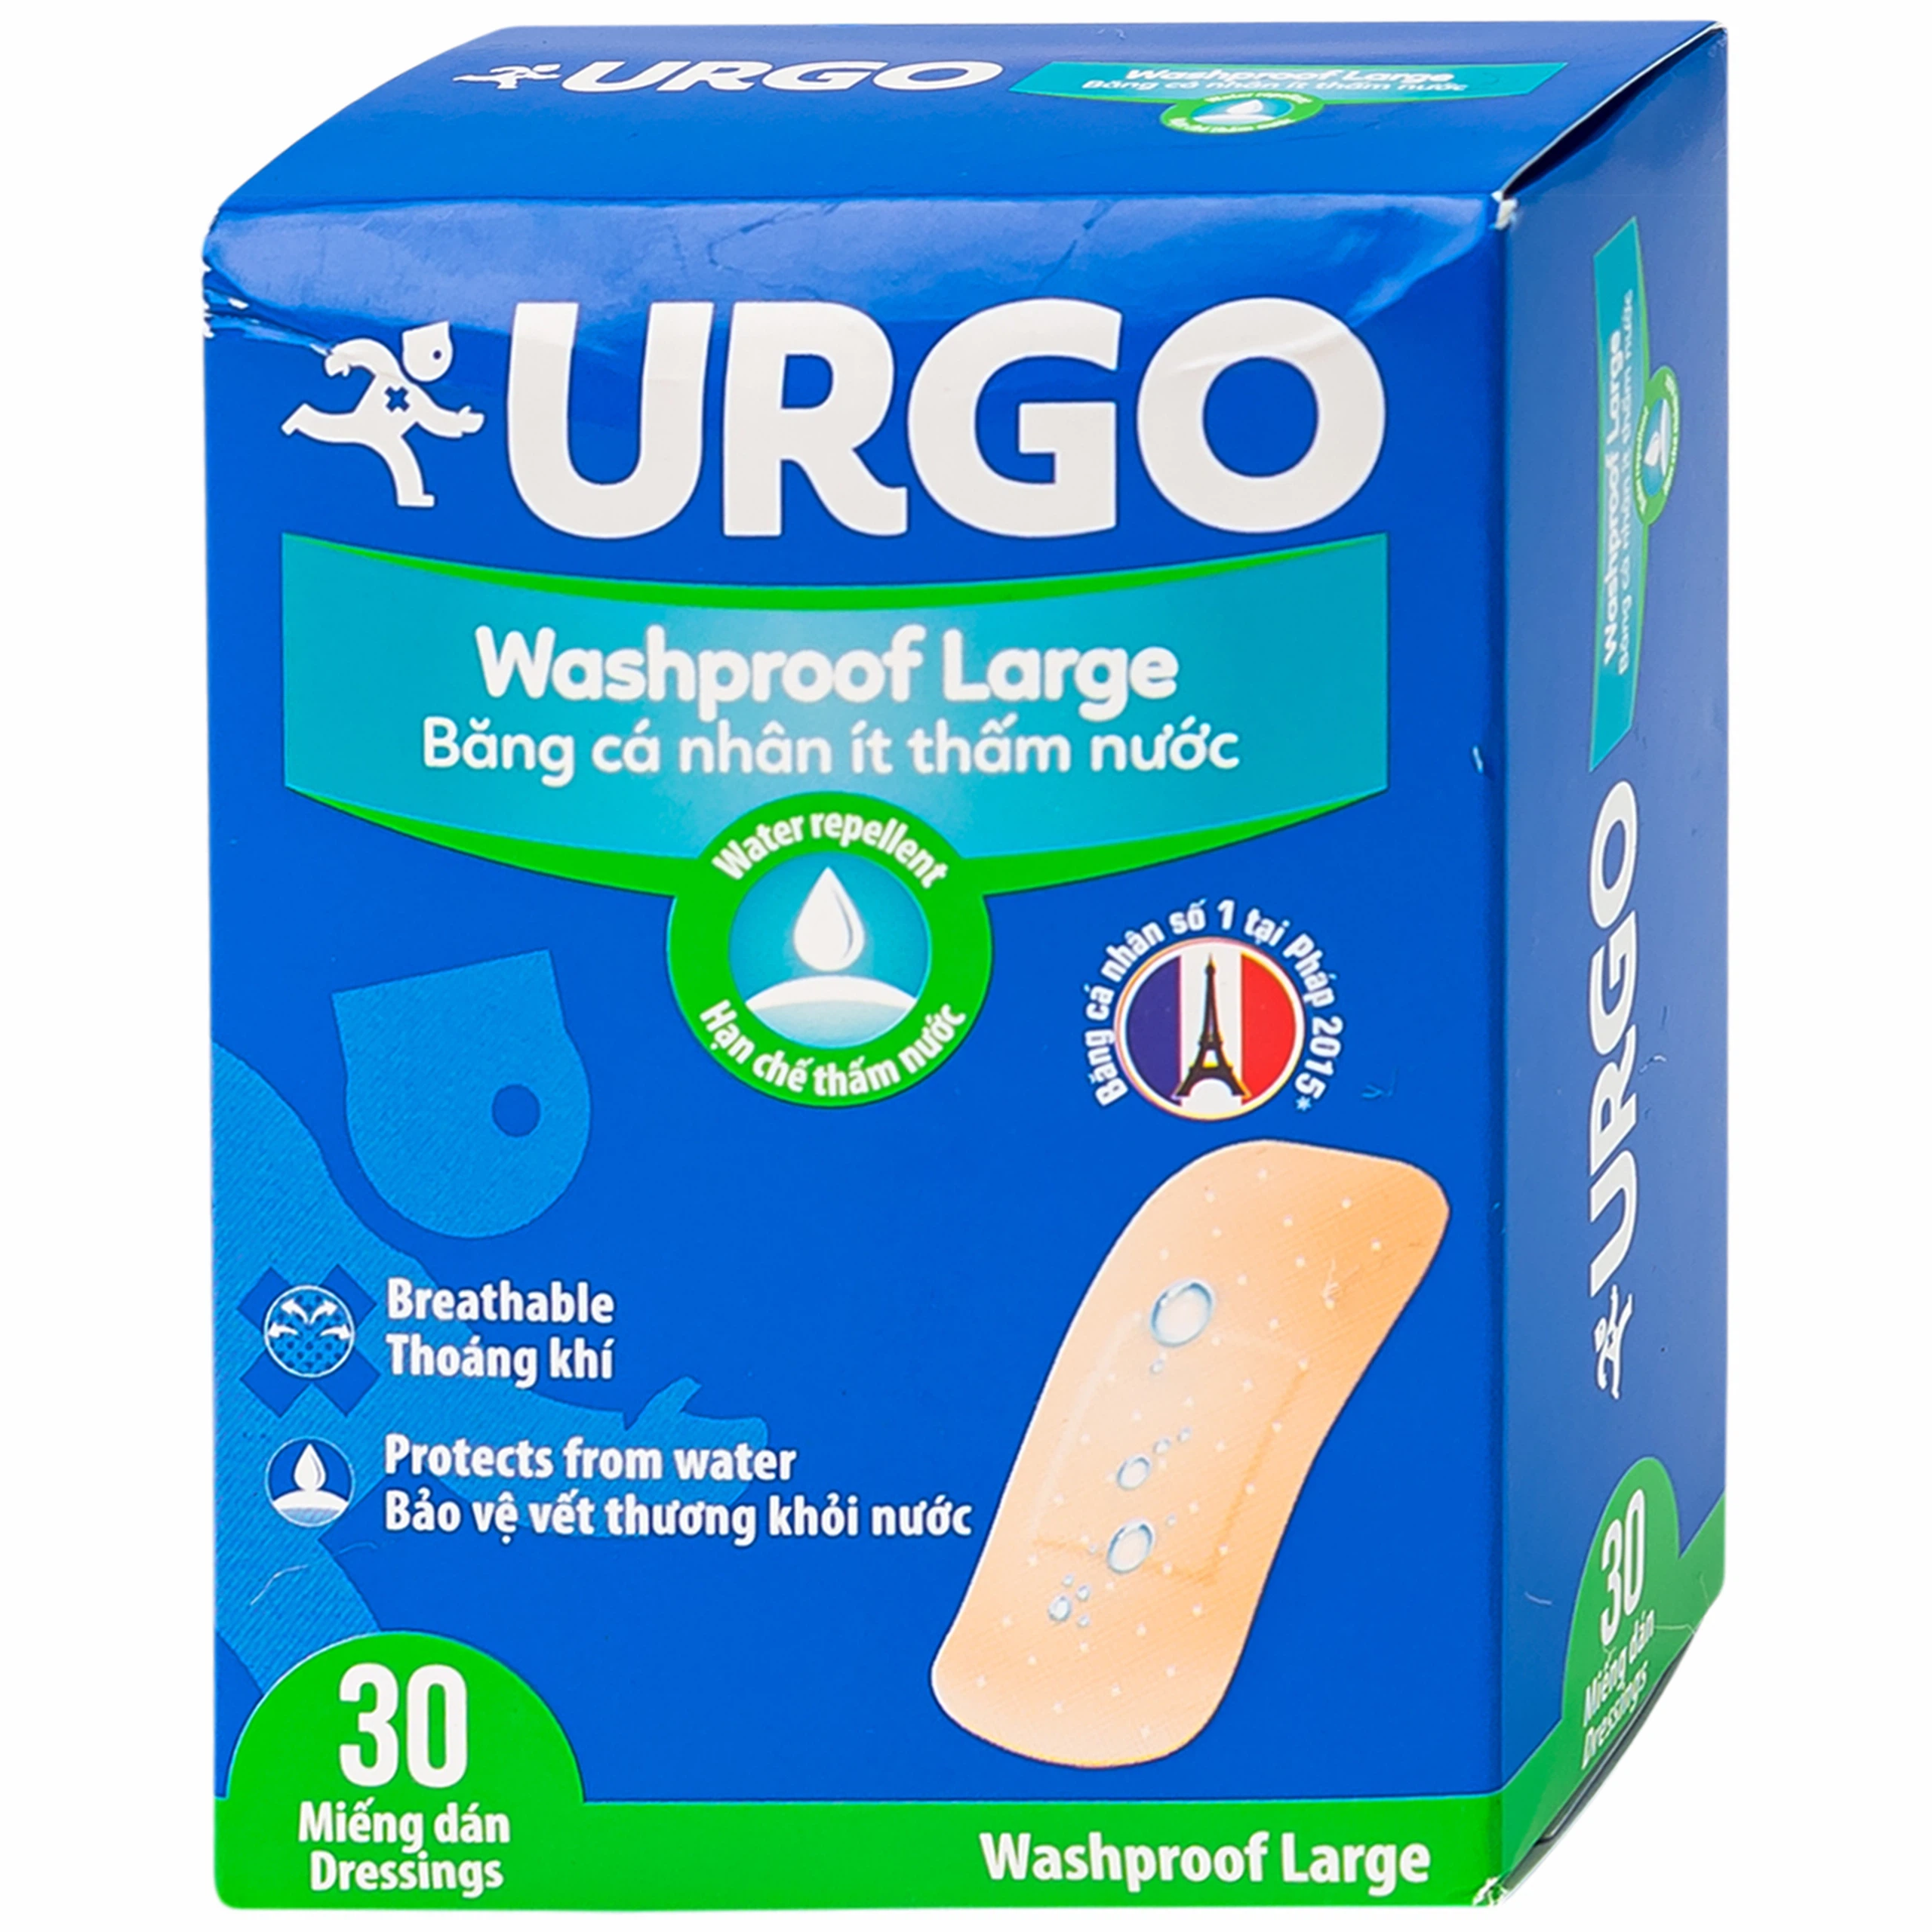 Băng cá nhân ít thấm nước Urgo Washproof Large bảo vệ vết thương khỏi nước (30 miếng)